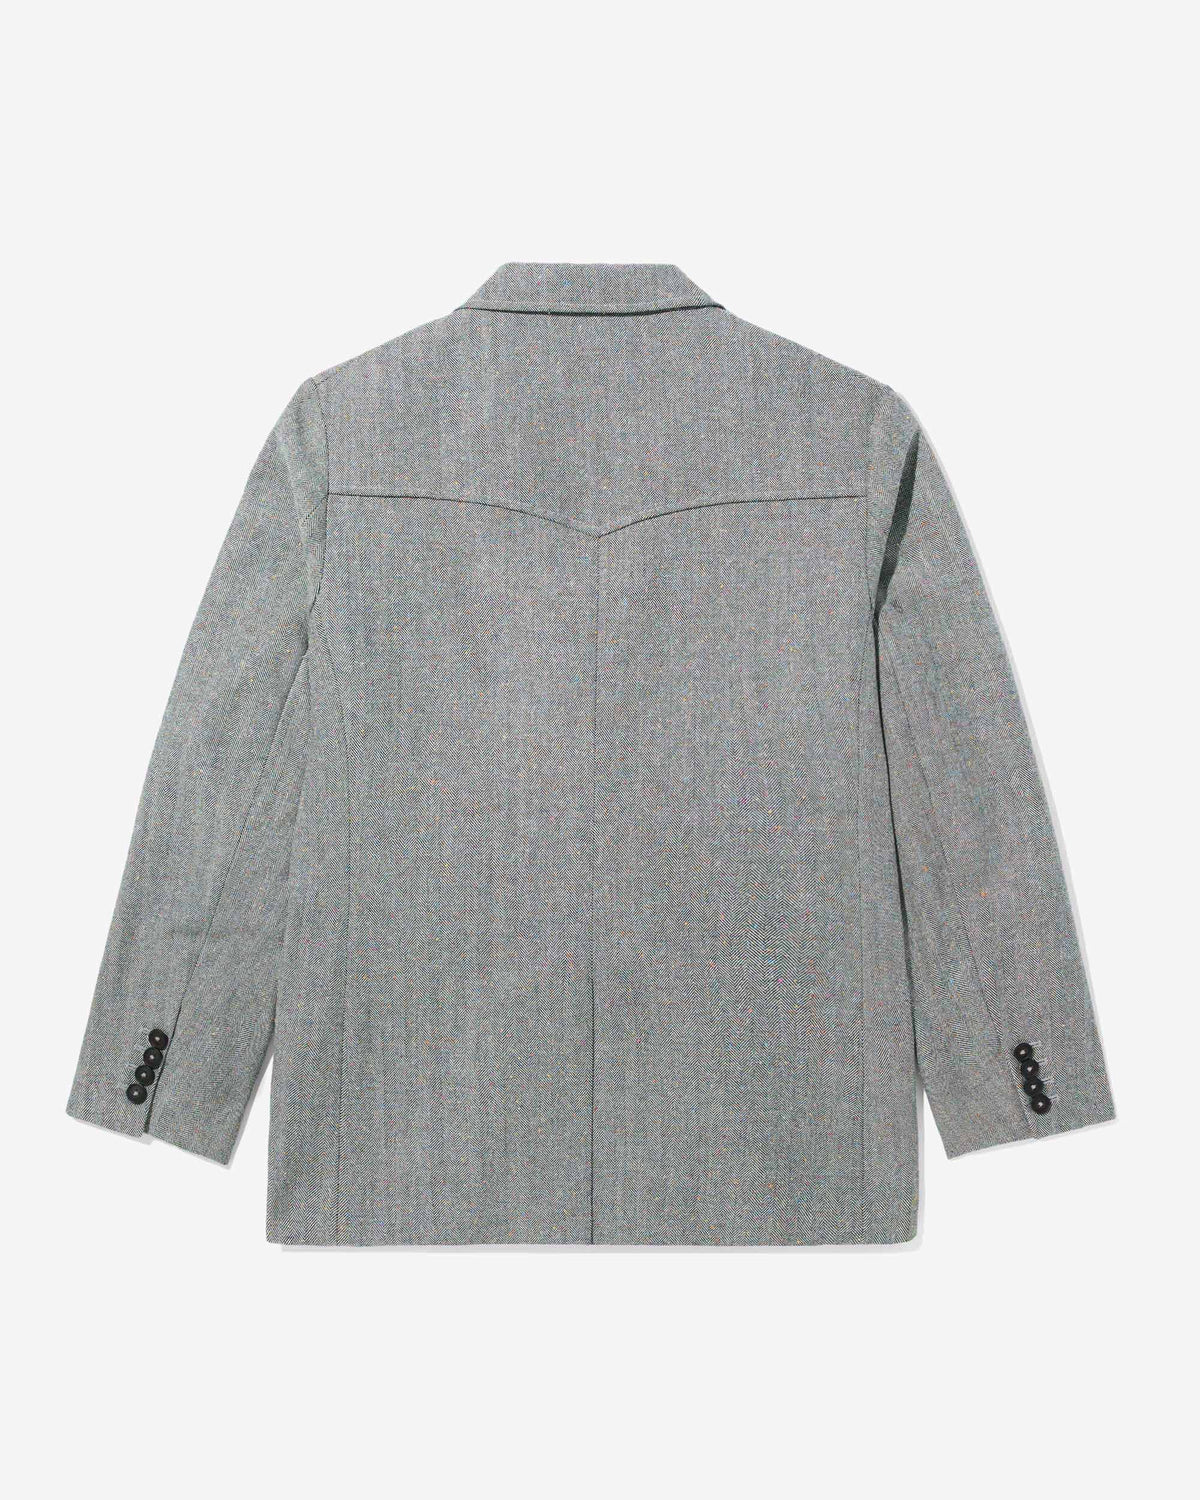 Herringbone Donegal Sack Jacket